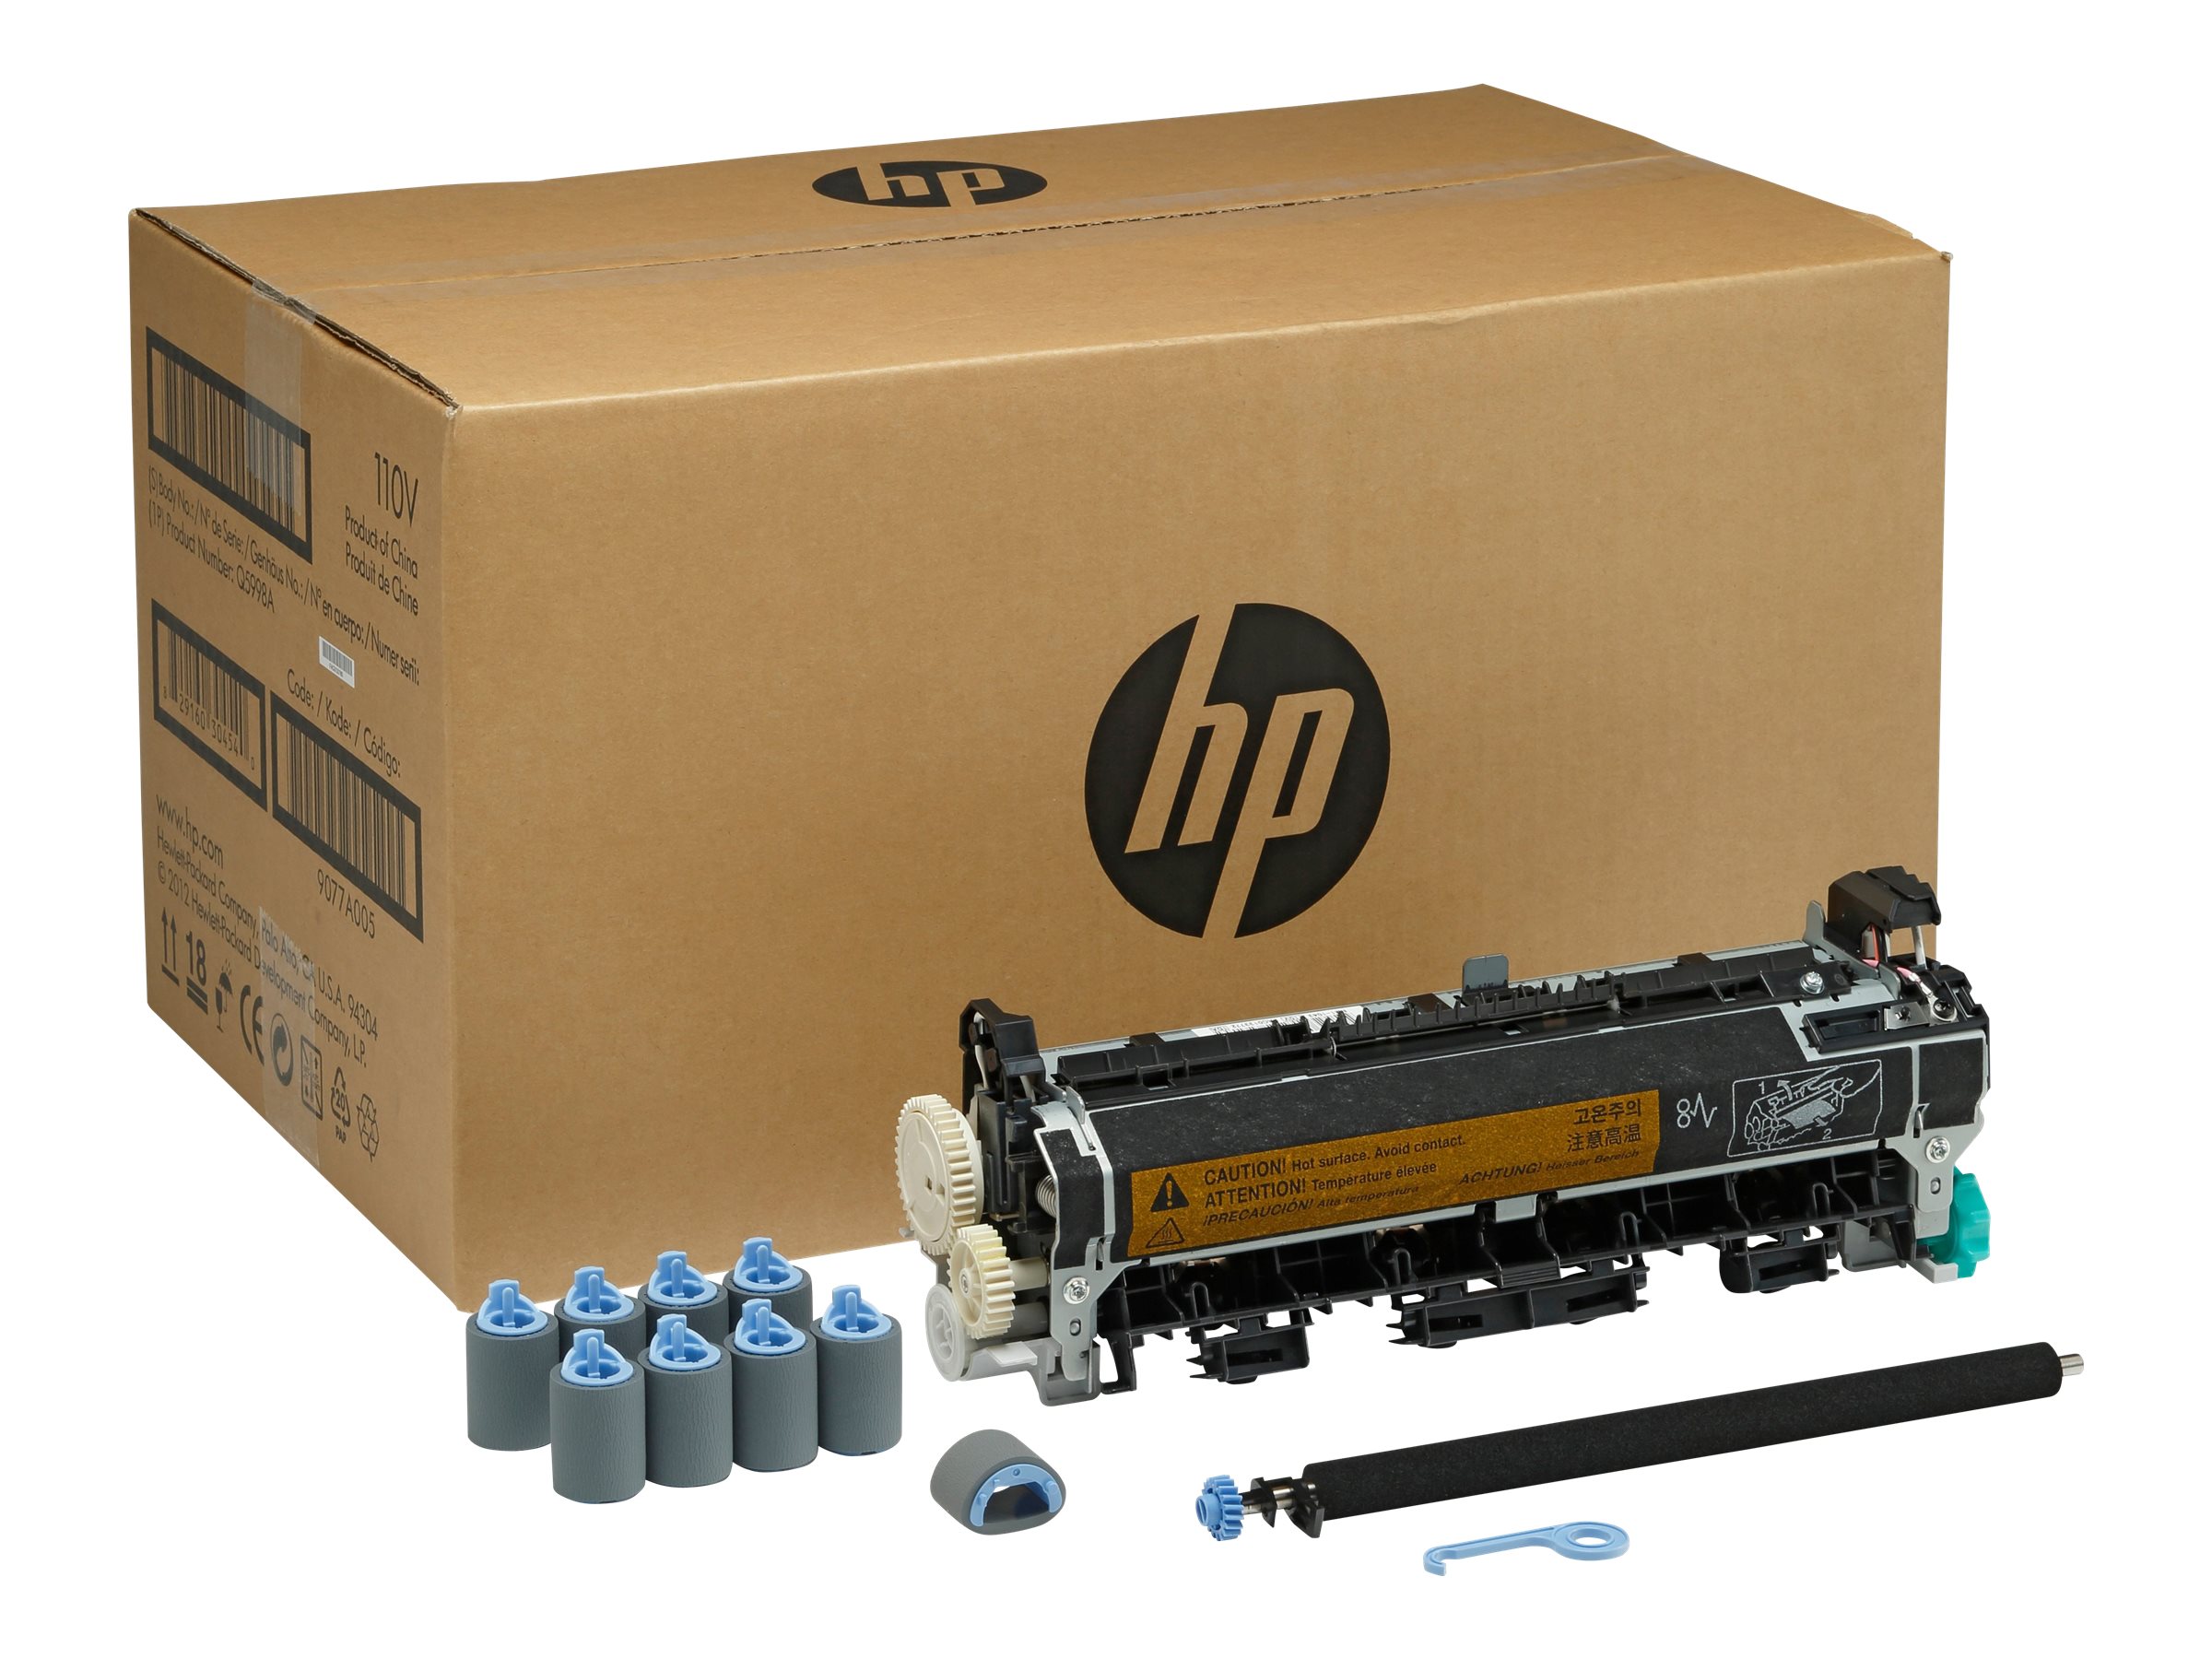 HP - (220 V) - Wartungskit - fr LaserJet 4345mfp, 4345x, 4345xm, 4345xs, M4345, M4345x, M4345xm, M4345xs, M4349x